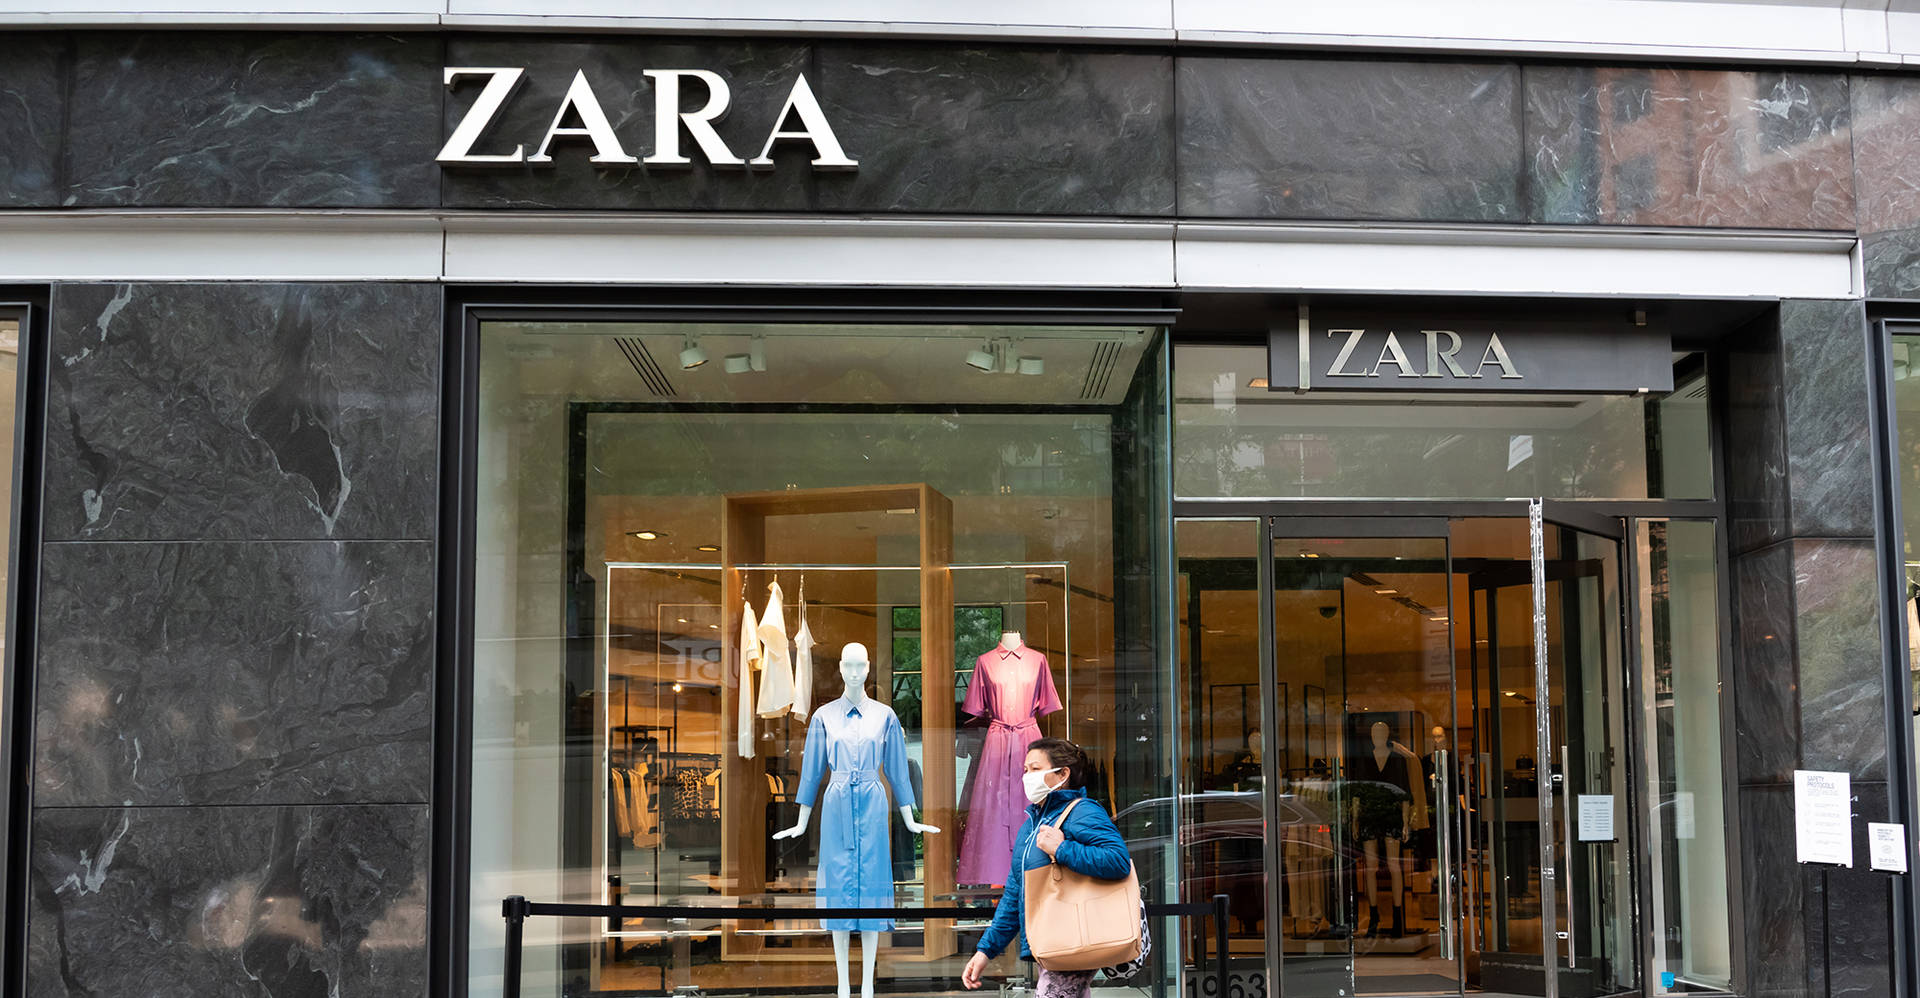 Zara Fashion Retail Giant Background